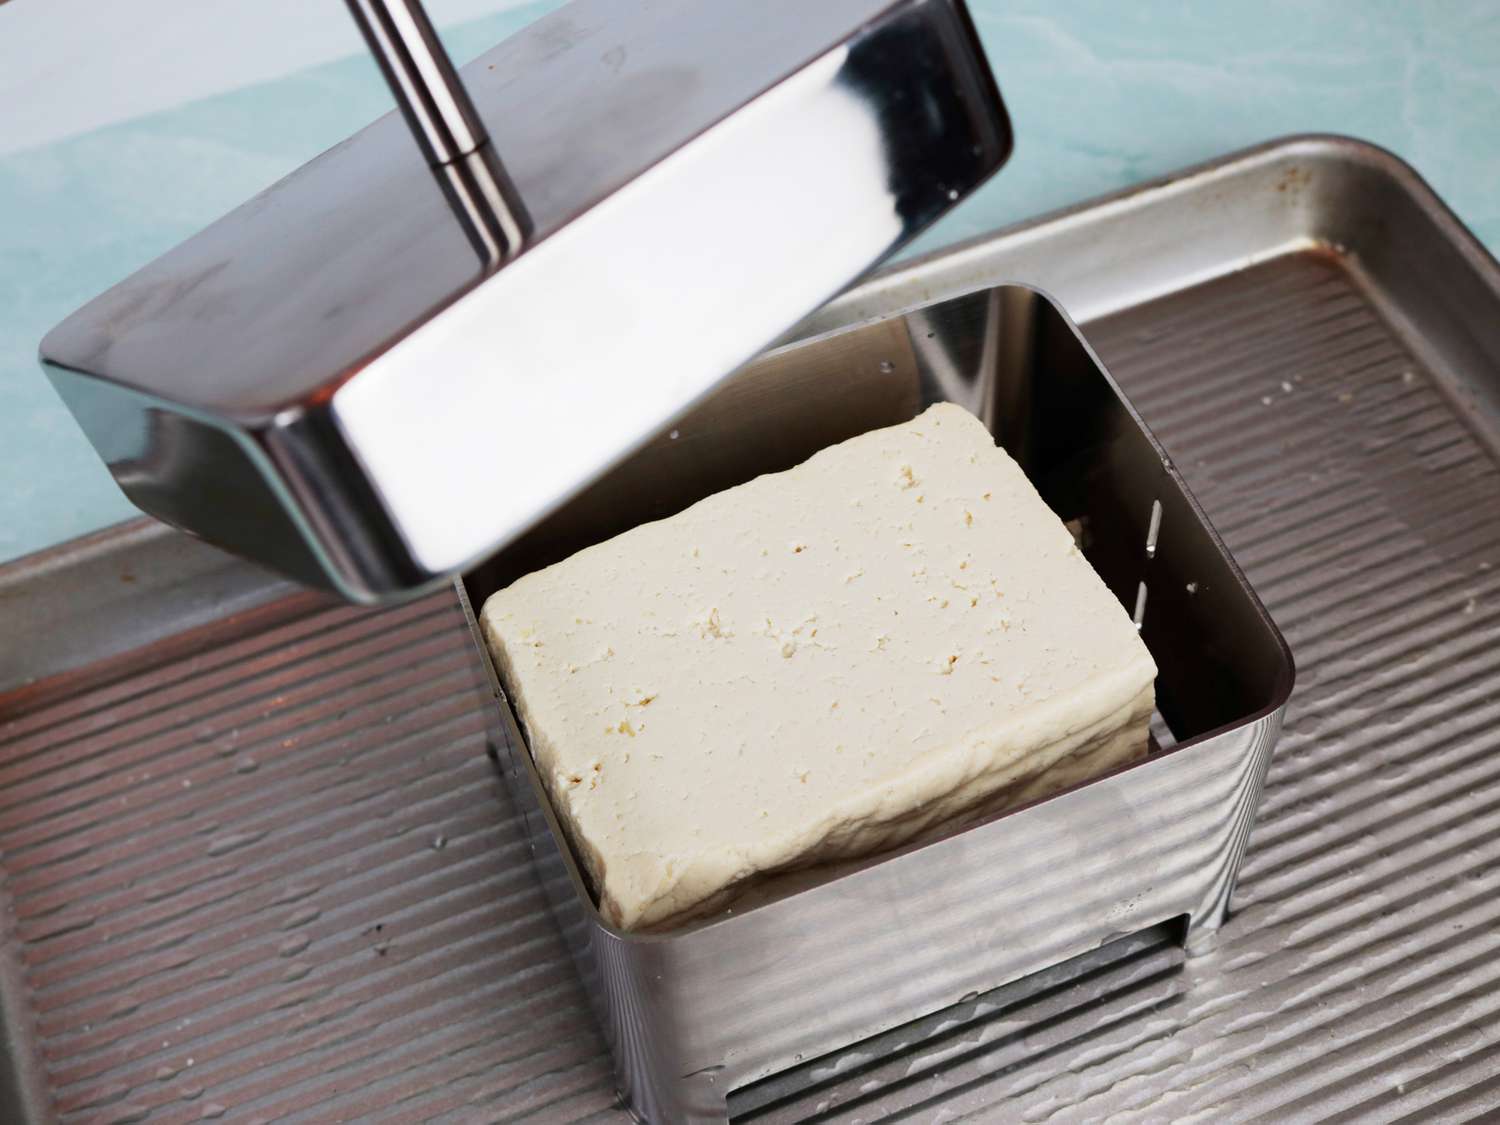 豆腐压锅:放在平底锅上用来盛水的豆腐压锅